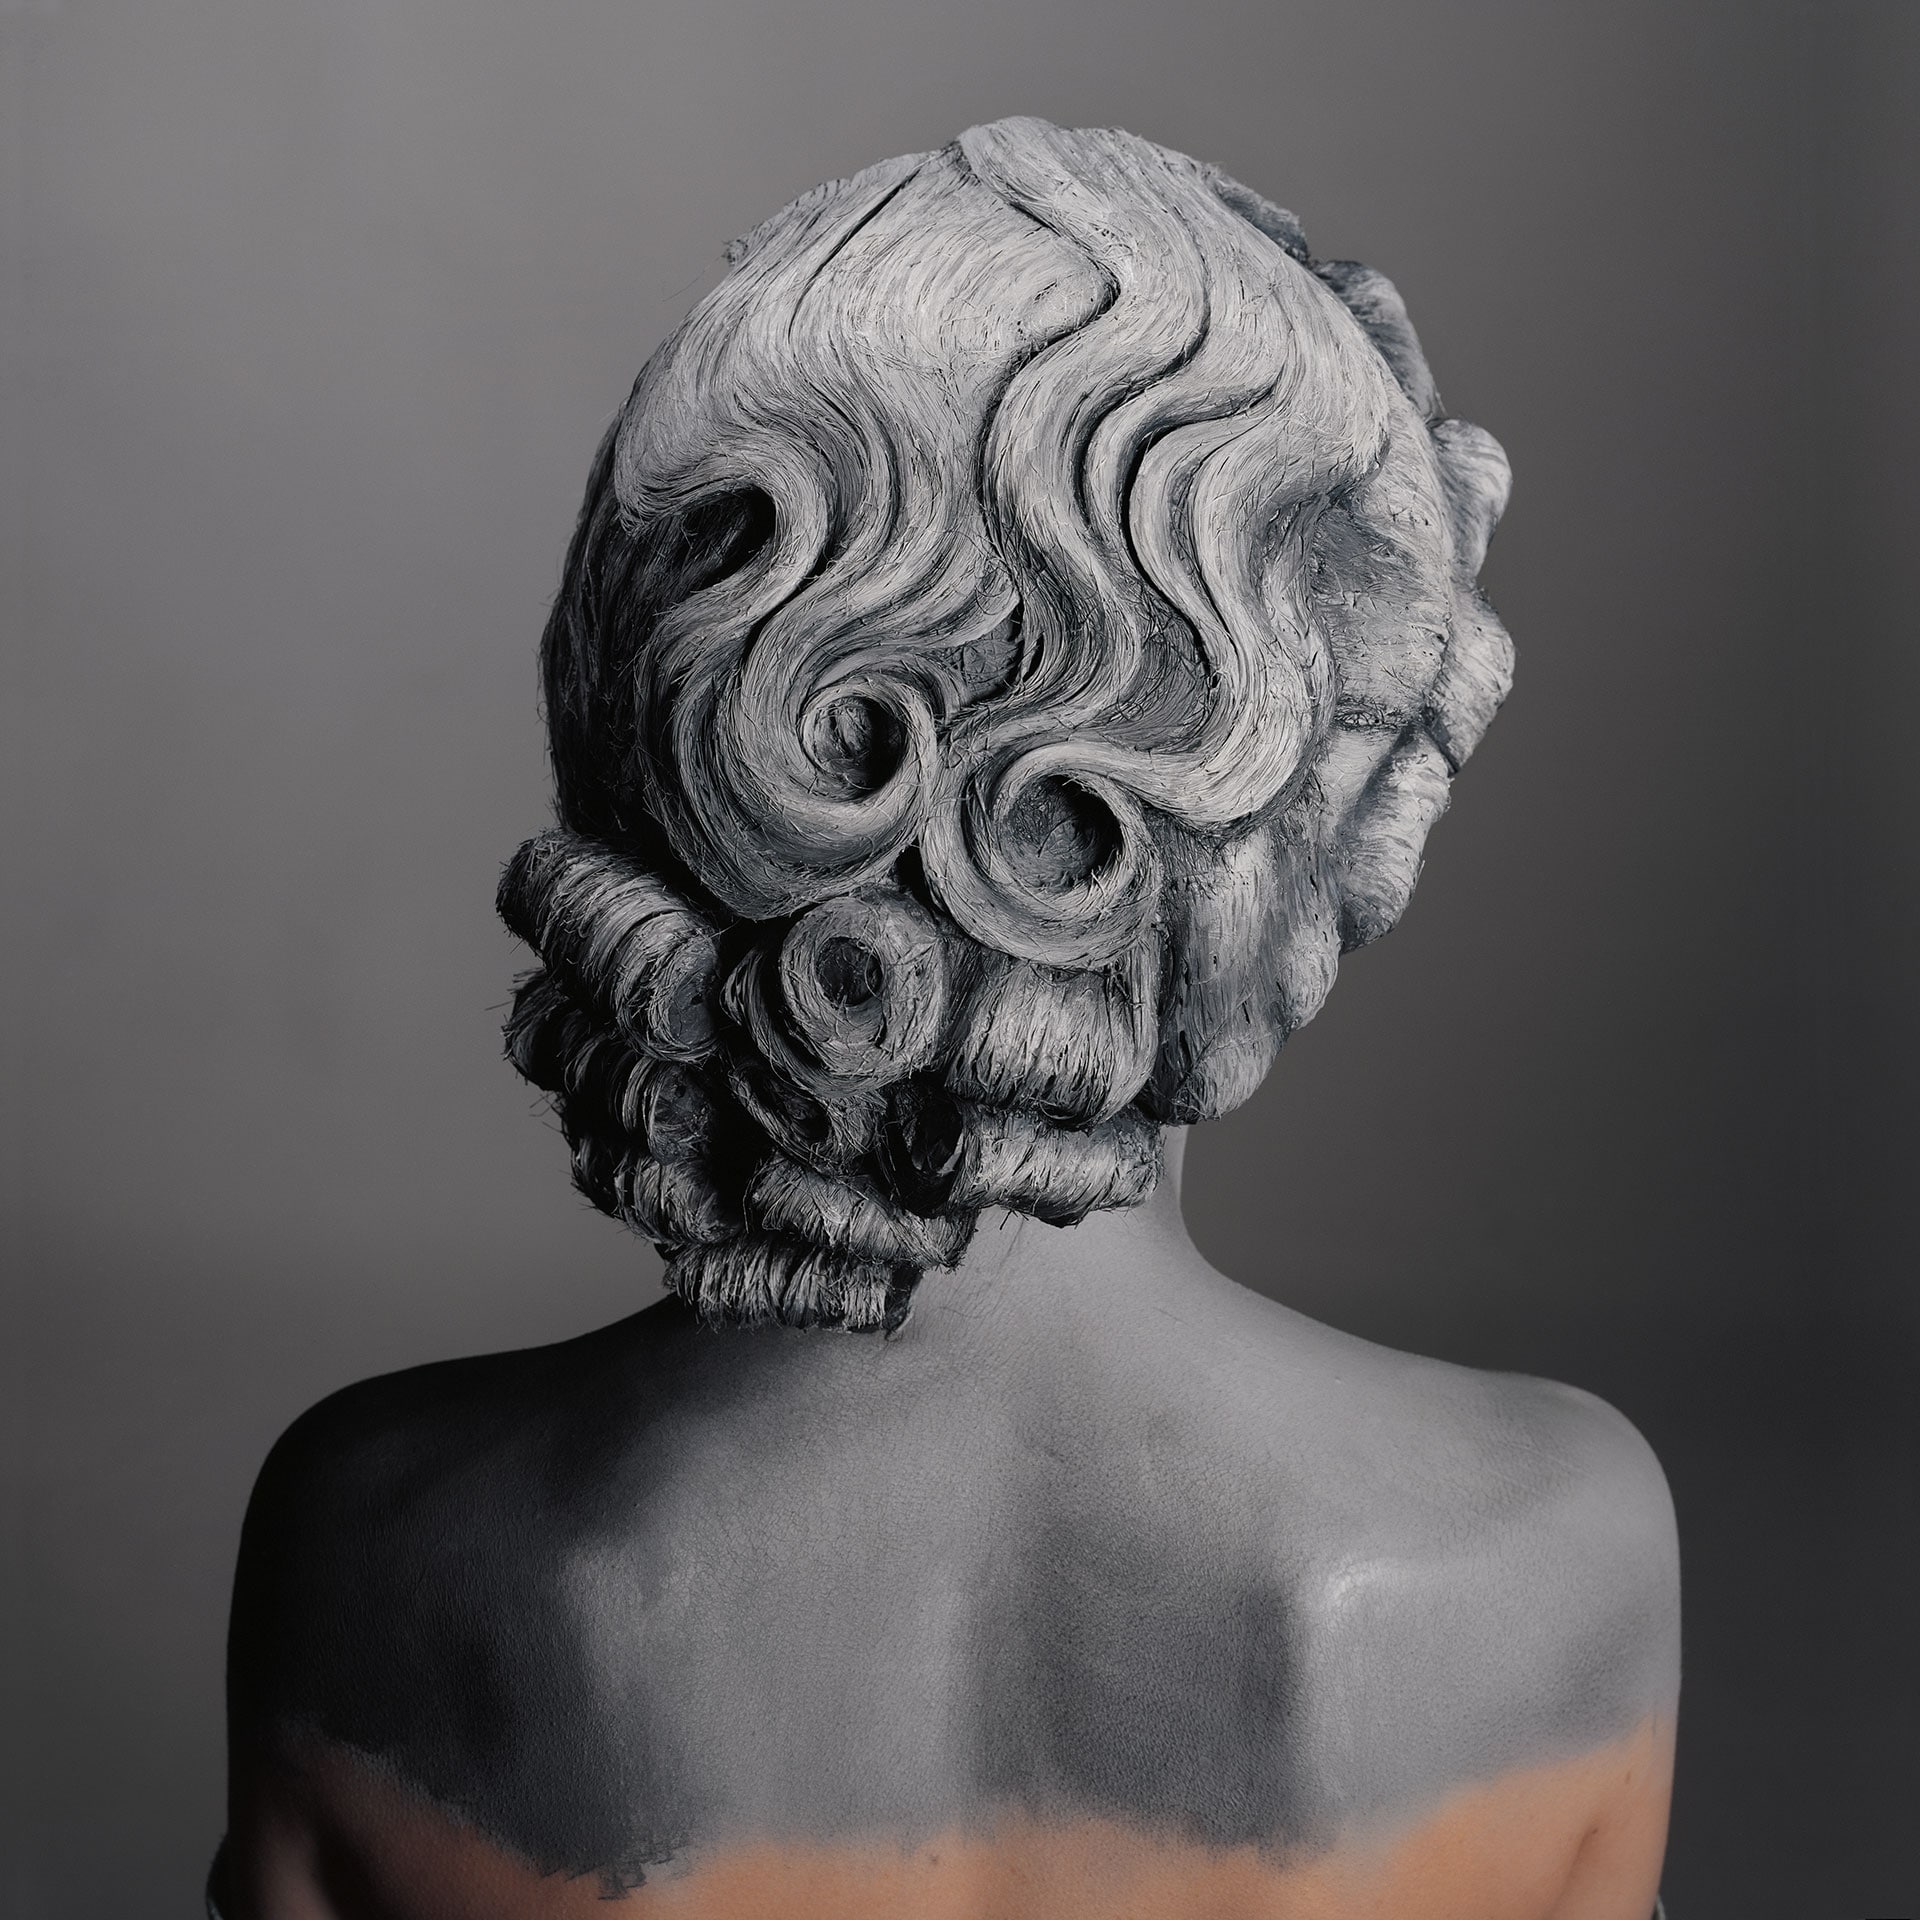 Senza titolo (les cheveux gris n'existent pas), 2016. Stampa fotografica lambda ilfoflex 65 x 65 cm ©Natacha Lesueur et ADAGP, Paris, 2021